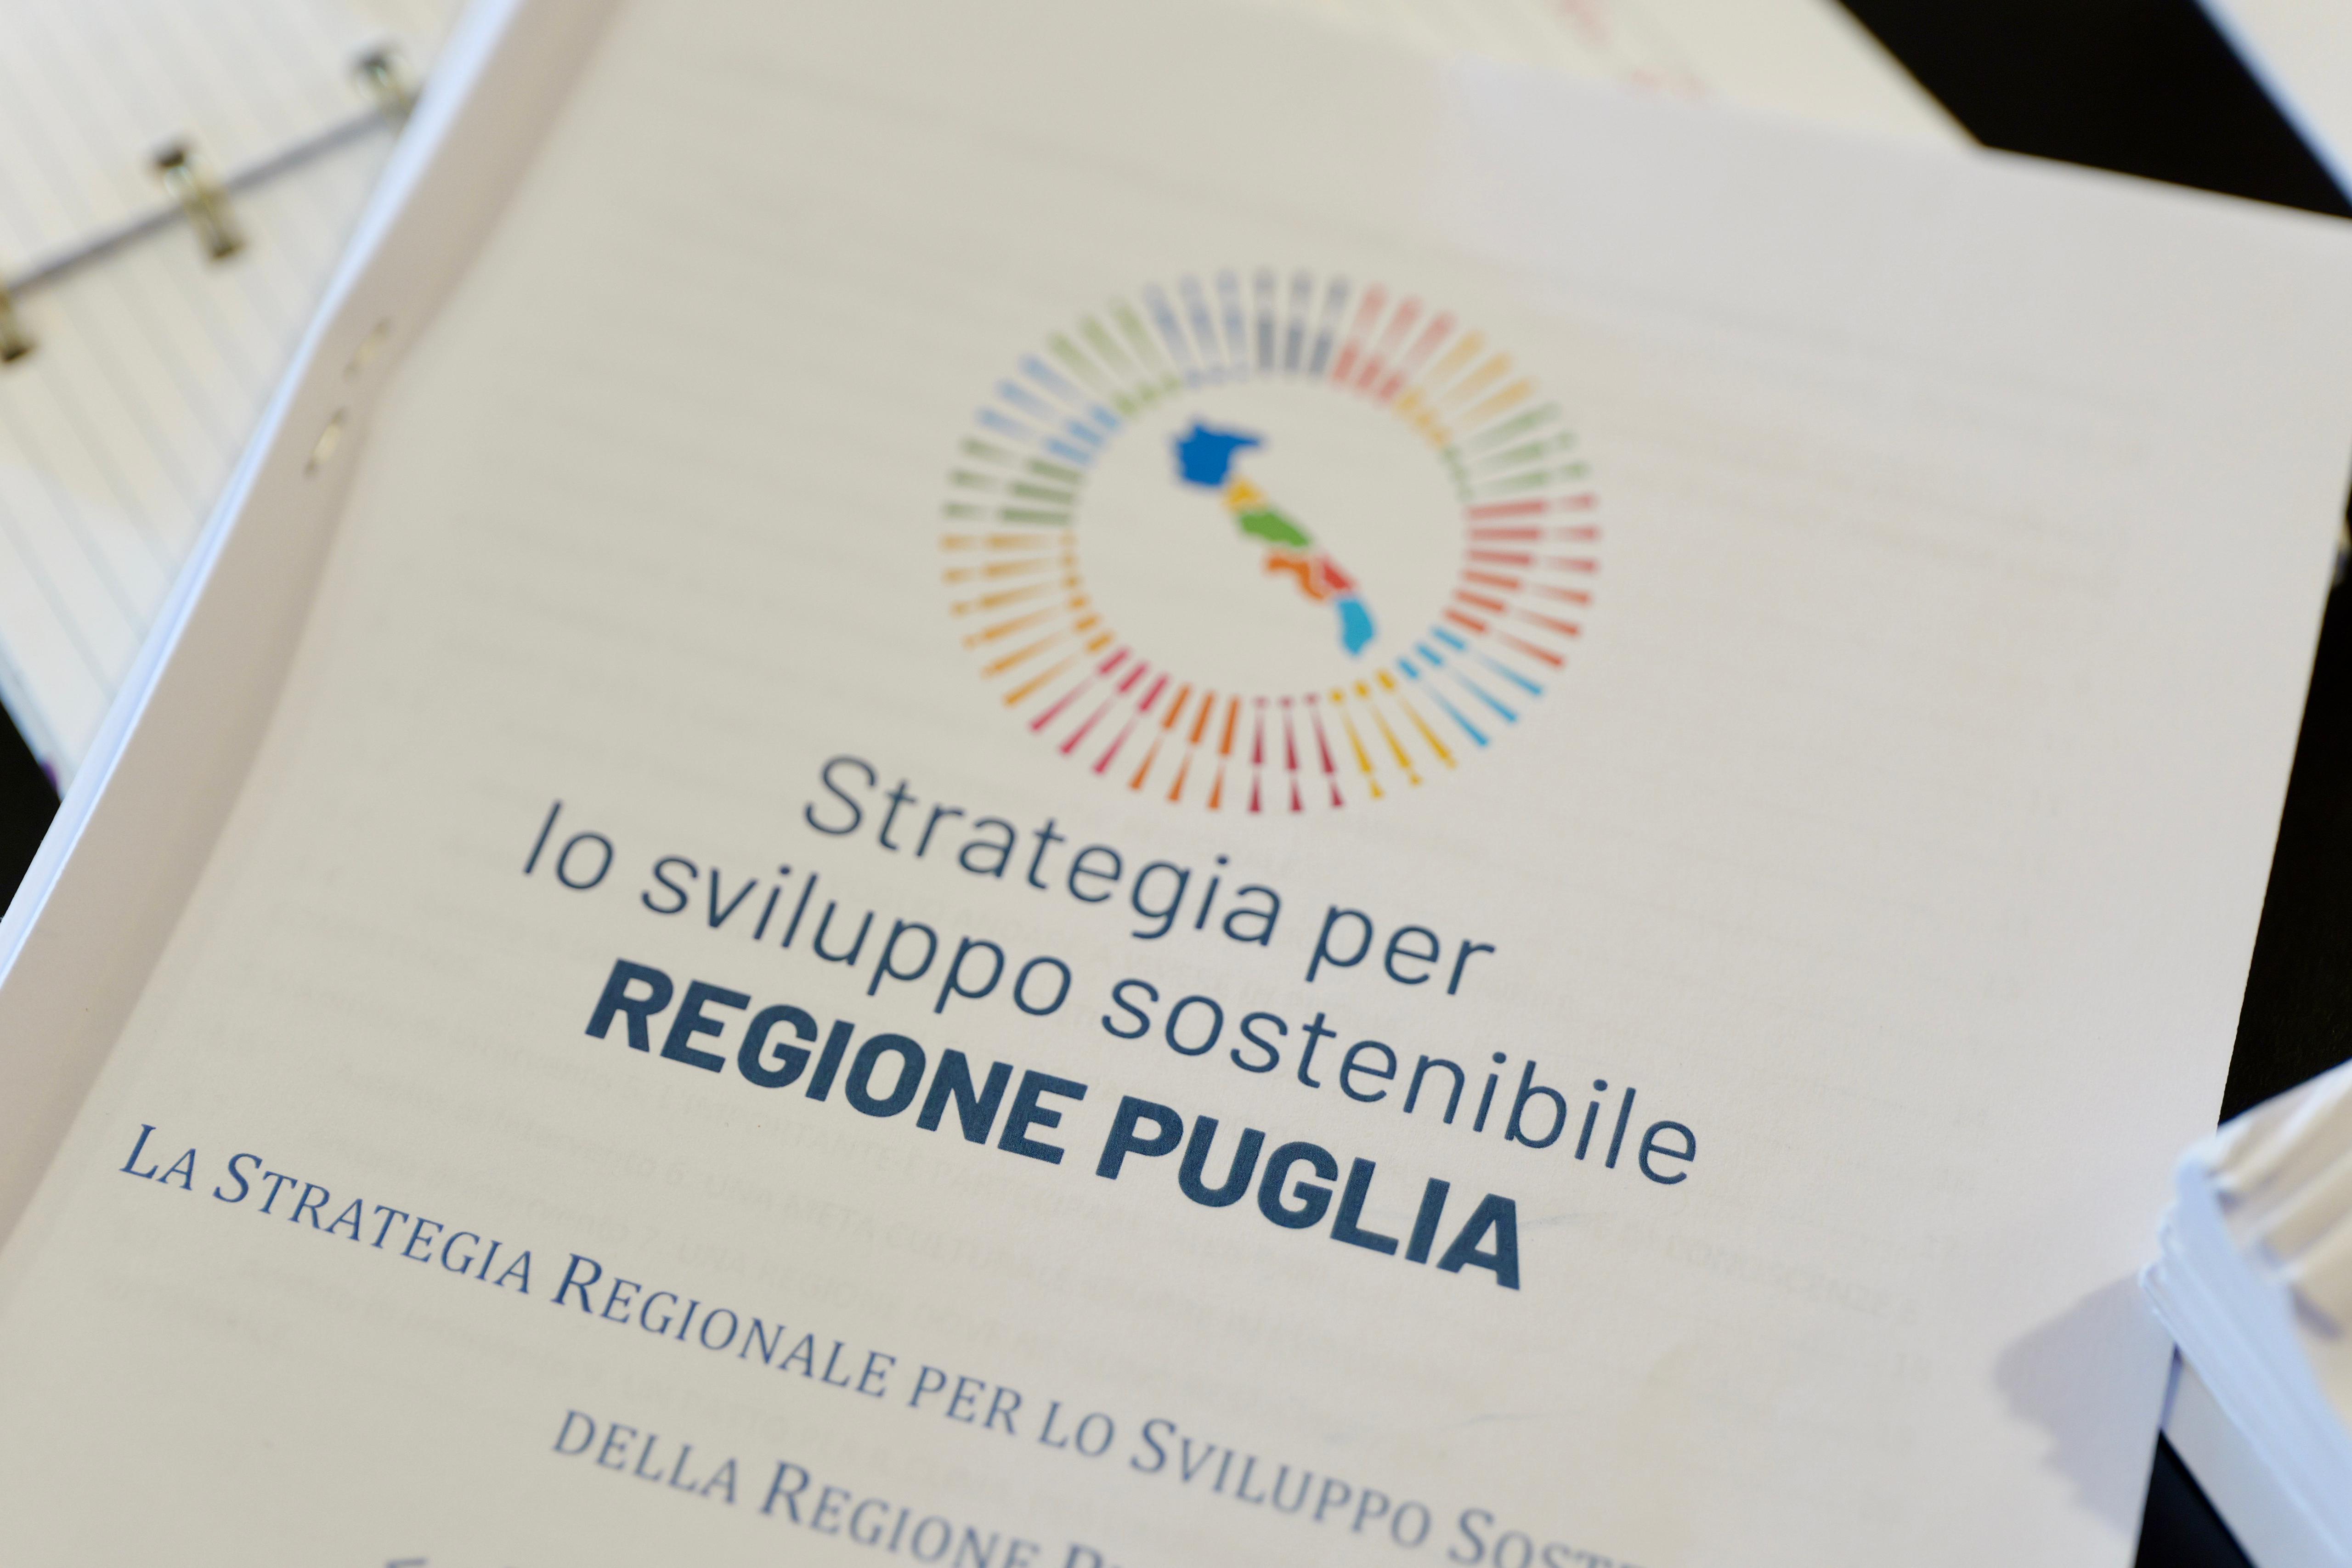 Galleria Presentata la Strategia regionale dello Sviluppo Sostenibile - Diapositiva 2 di 9